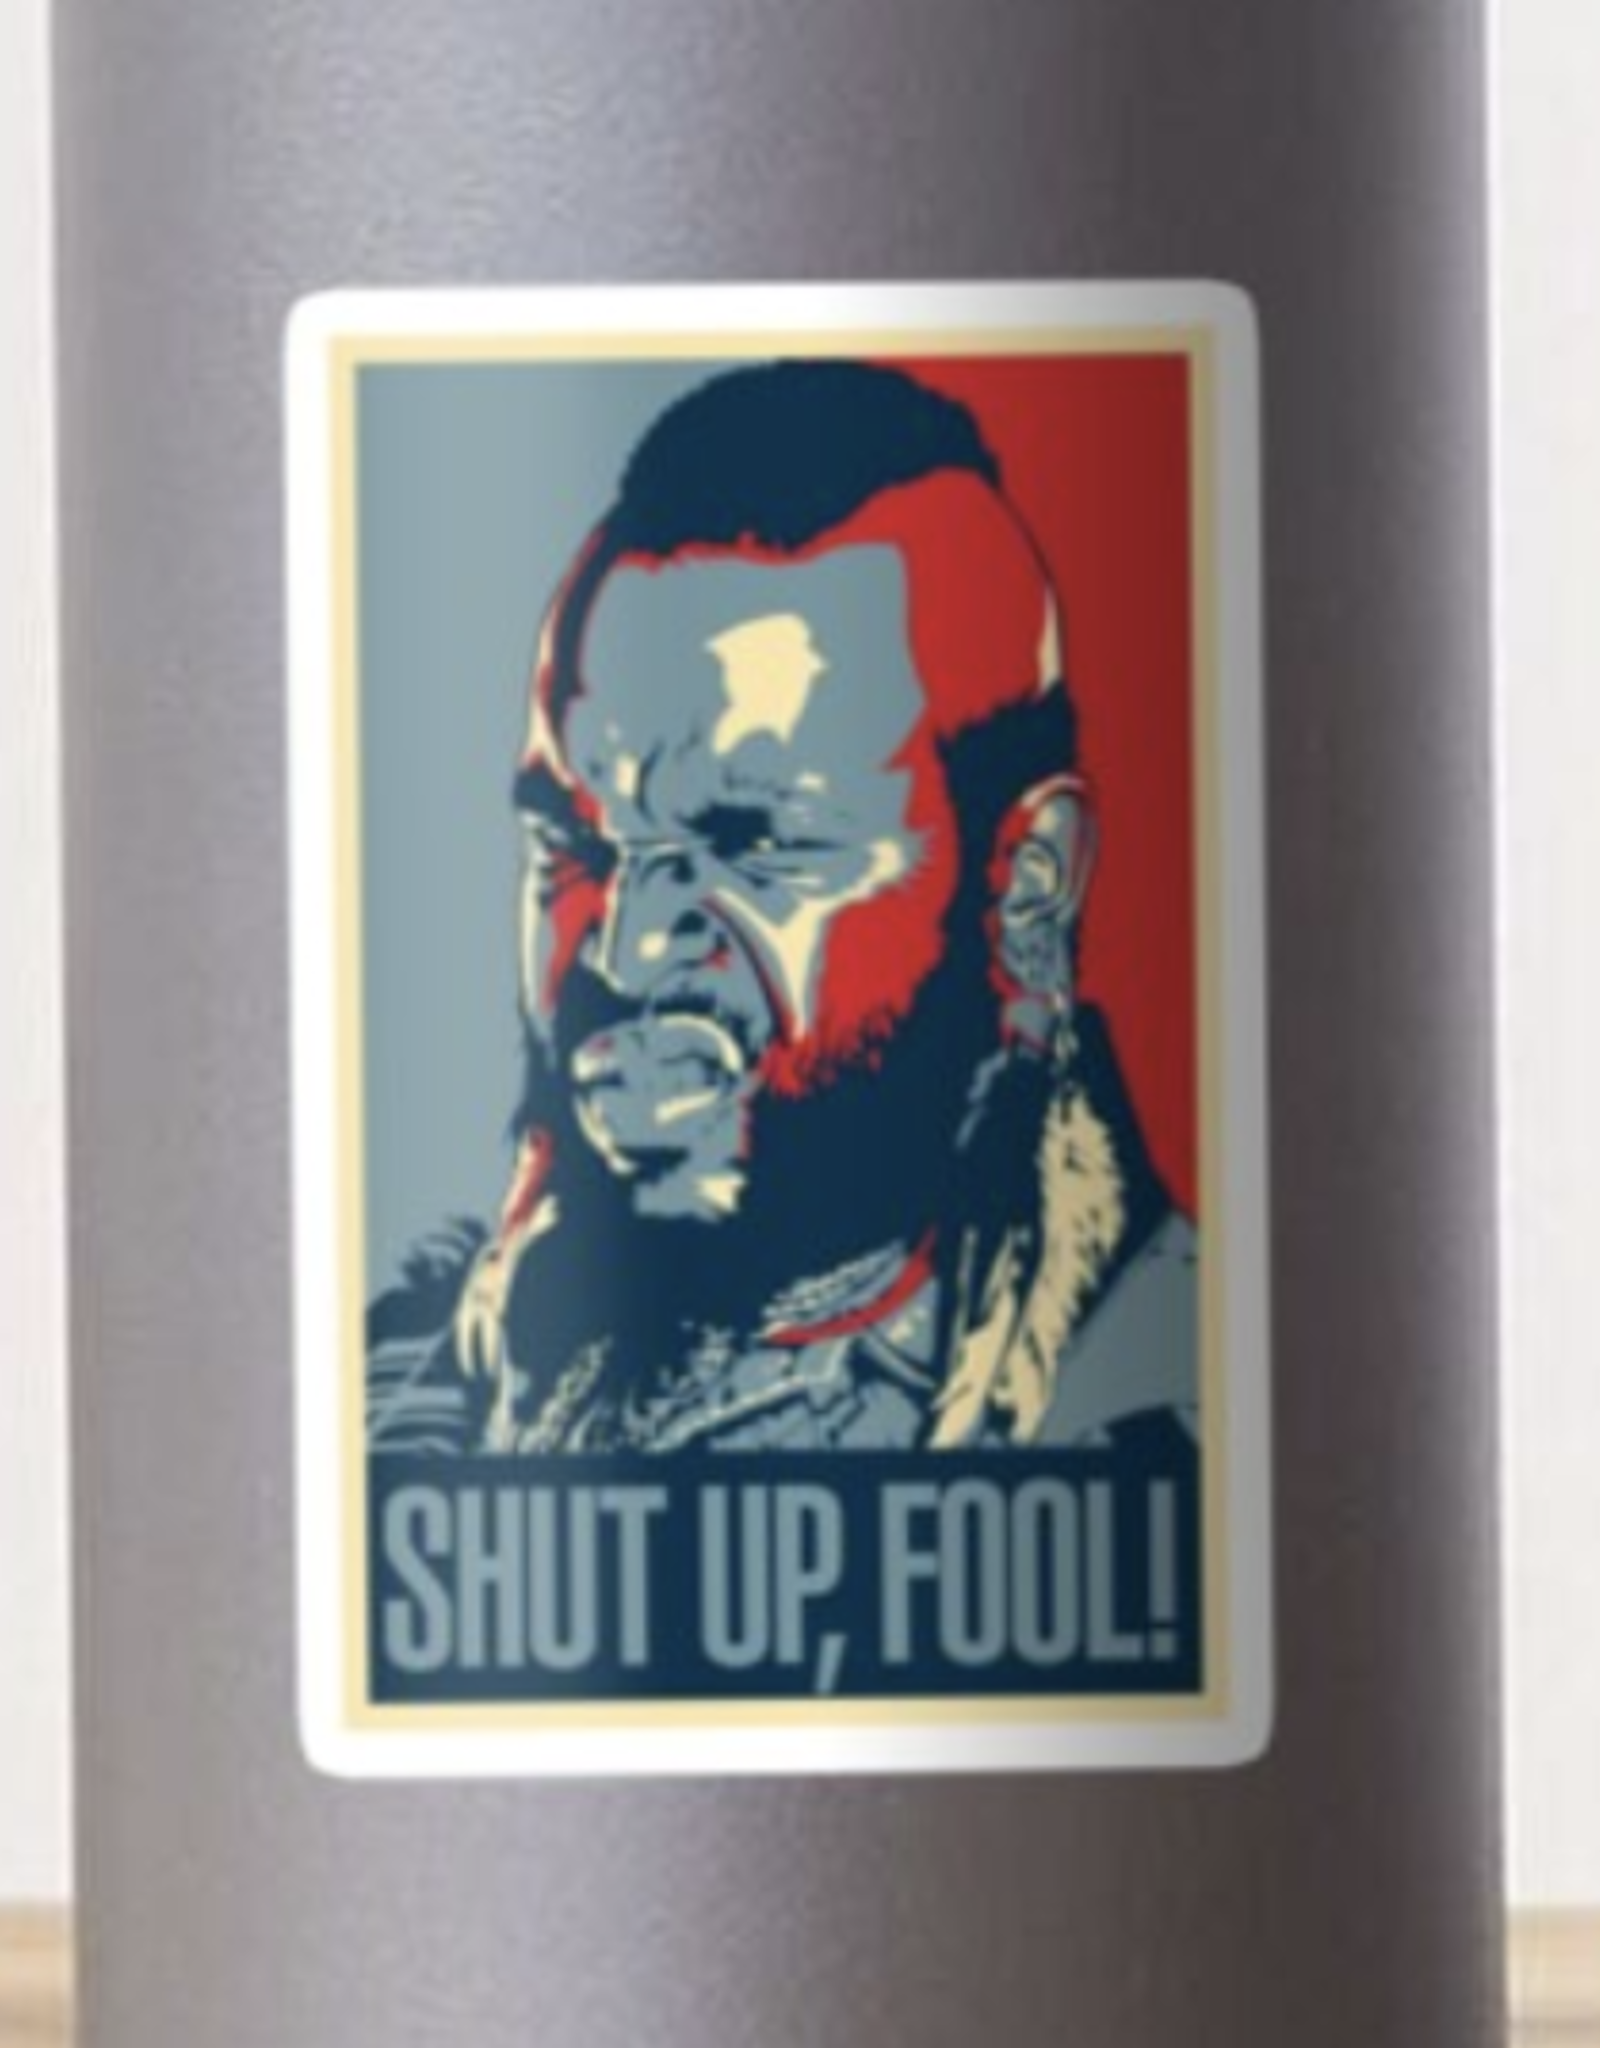 Mr. T Shut Up Fool Sticker